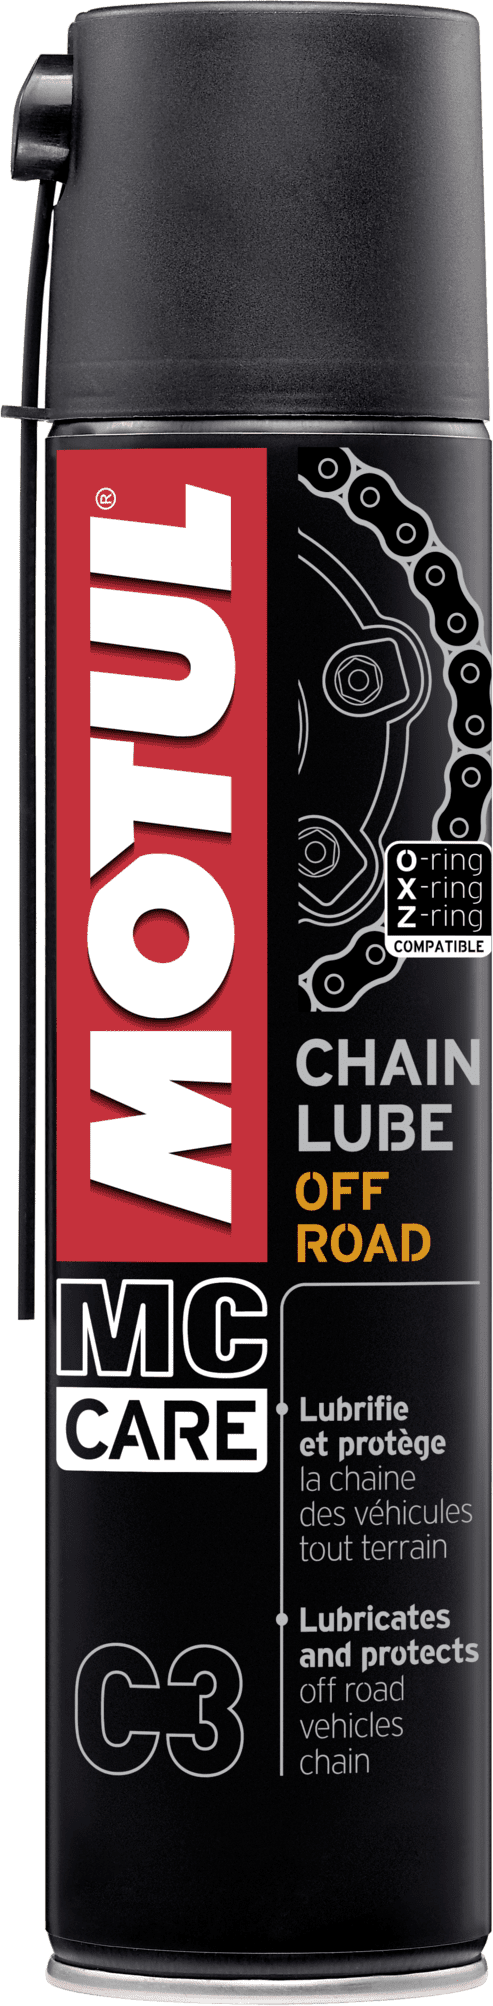 Motul MC Care C3 Chain Lube Off Road, 400 ml